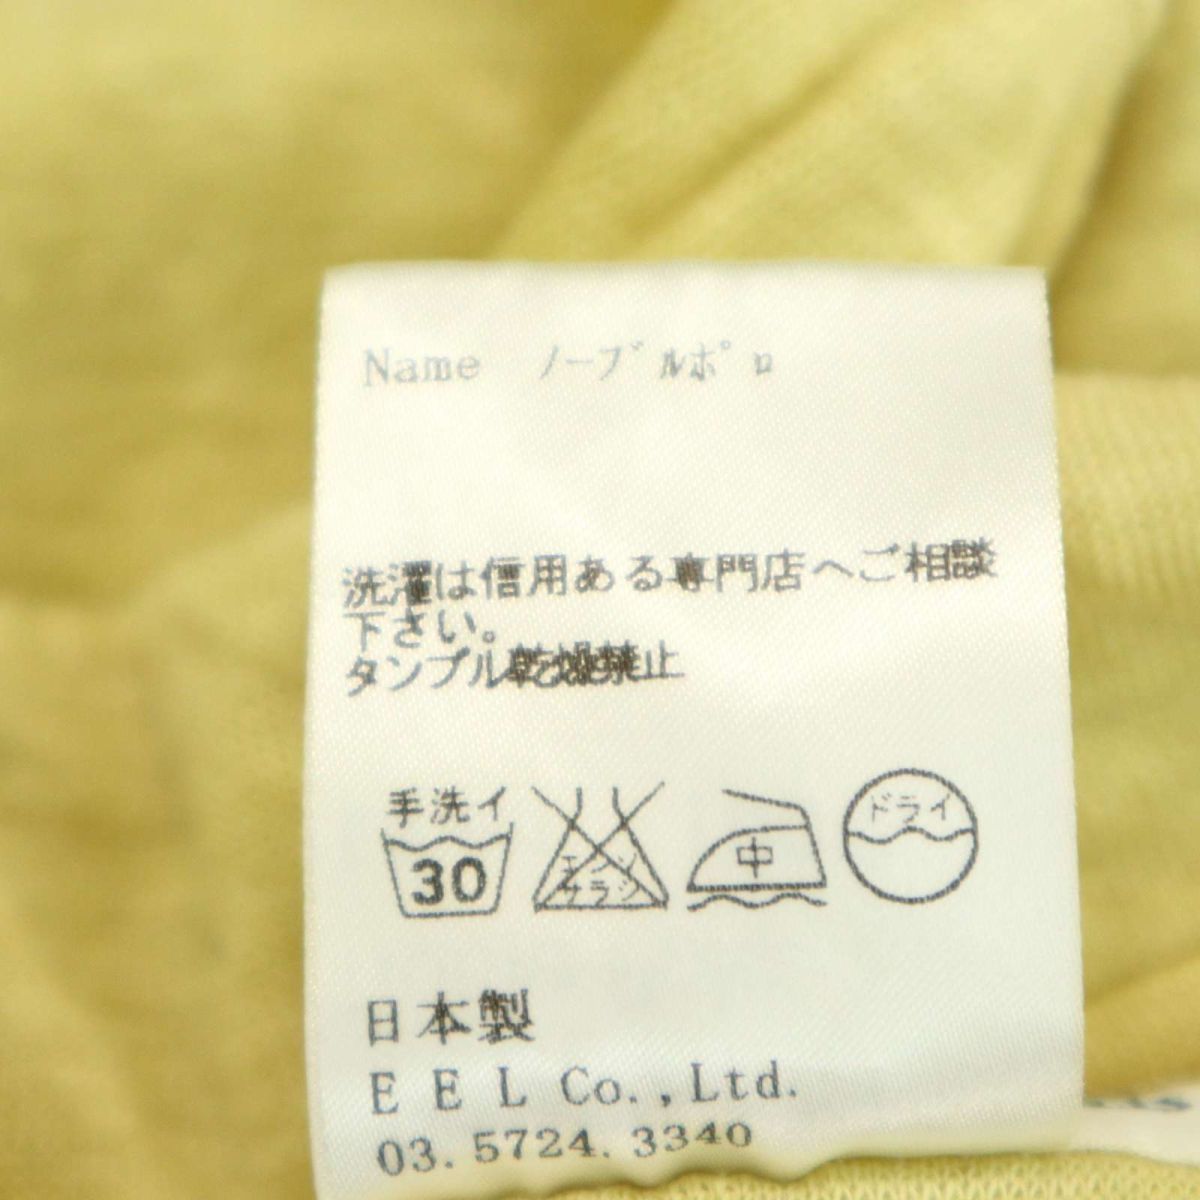 EELi-ru весна лето [ noble Polo ] лен linen100% рубашка-поло с коротким рукавом Sz.XS мужской сделано в Японии A3T08066_7#A